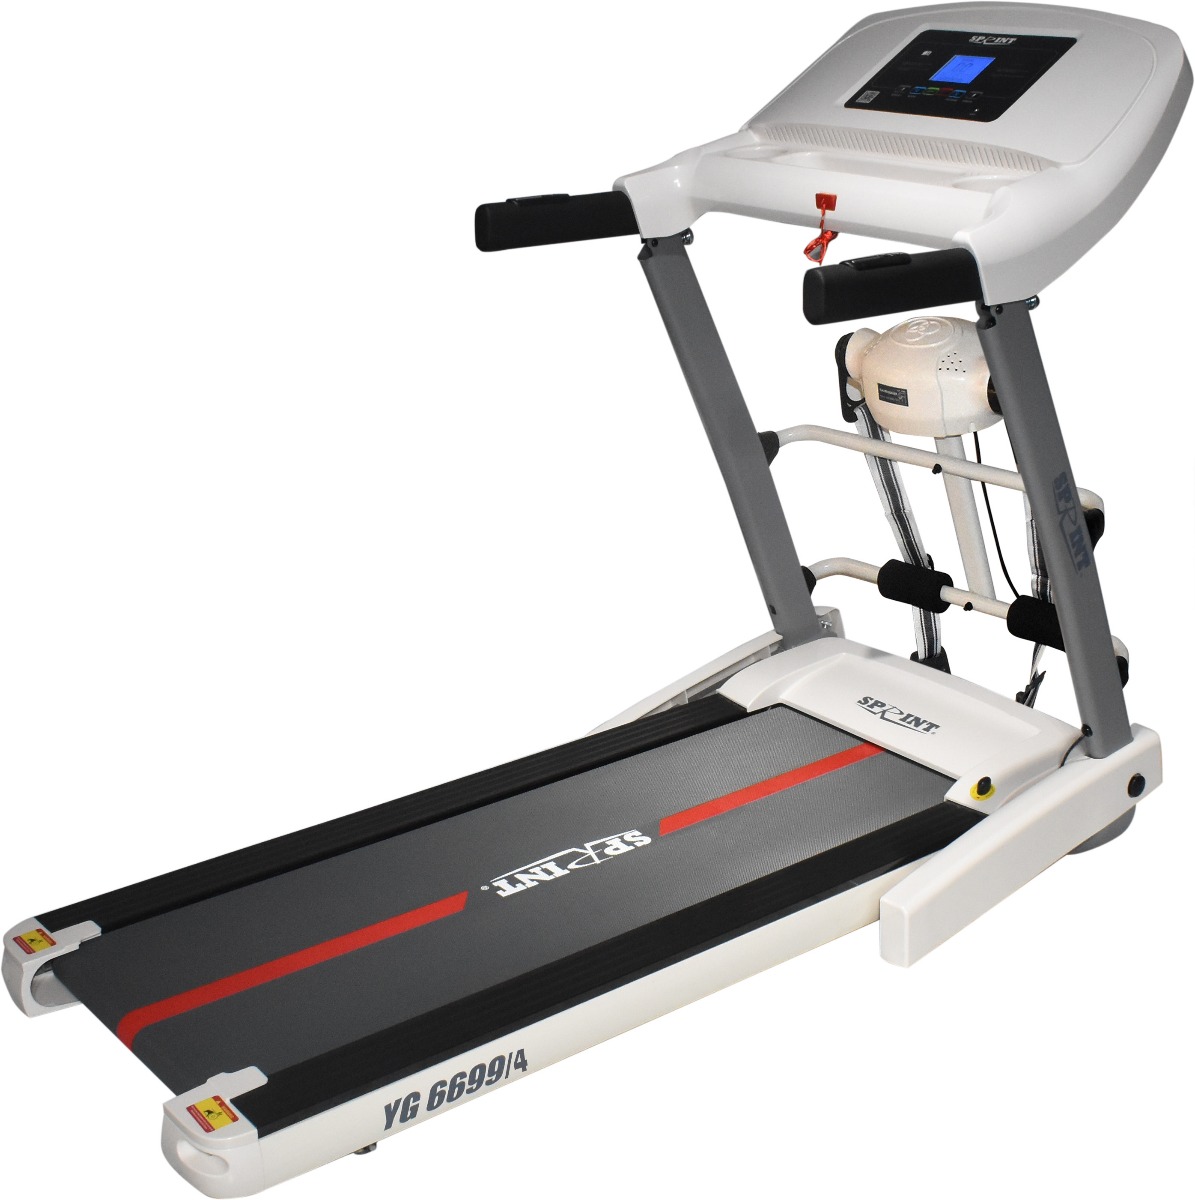 Sprint Multifunction Treadmill, 120 KG, Multicolor - YG 6699 4